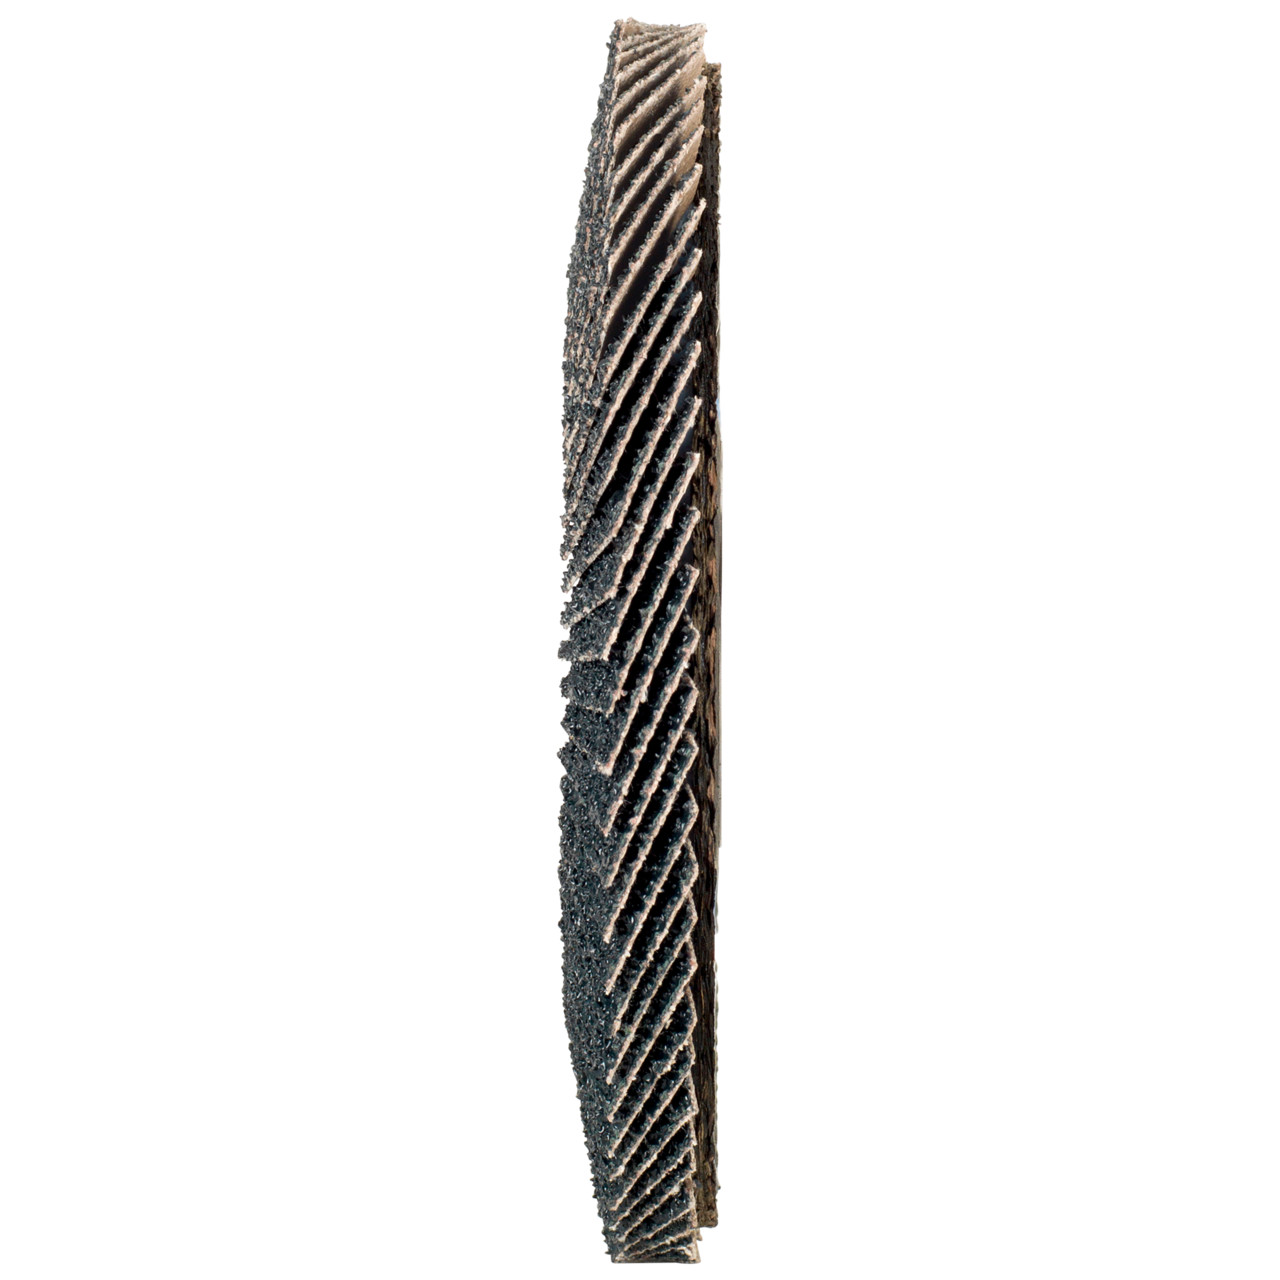 TYROLIT Fächerscheibe DxH 115x22,2 2in1 für Stahl & Edelstahl, P80, Form: 27A - gekröpfte Ausführung (Glasfaserträgerkörperausführung), Art. 668649